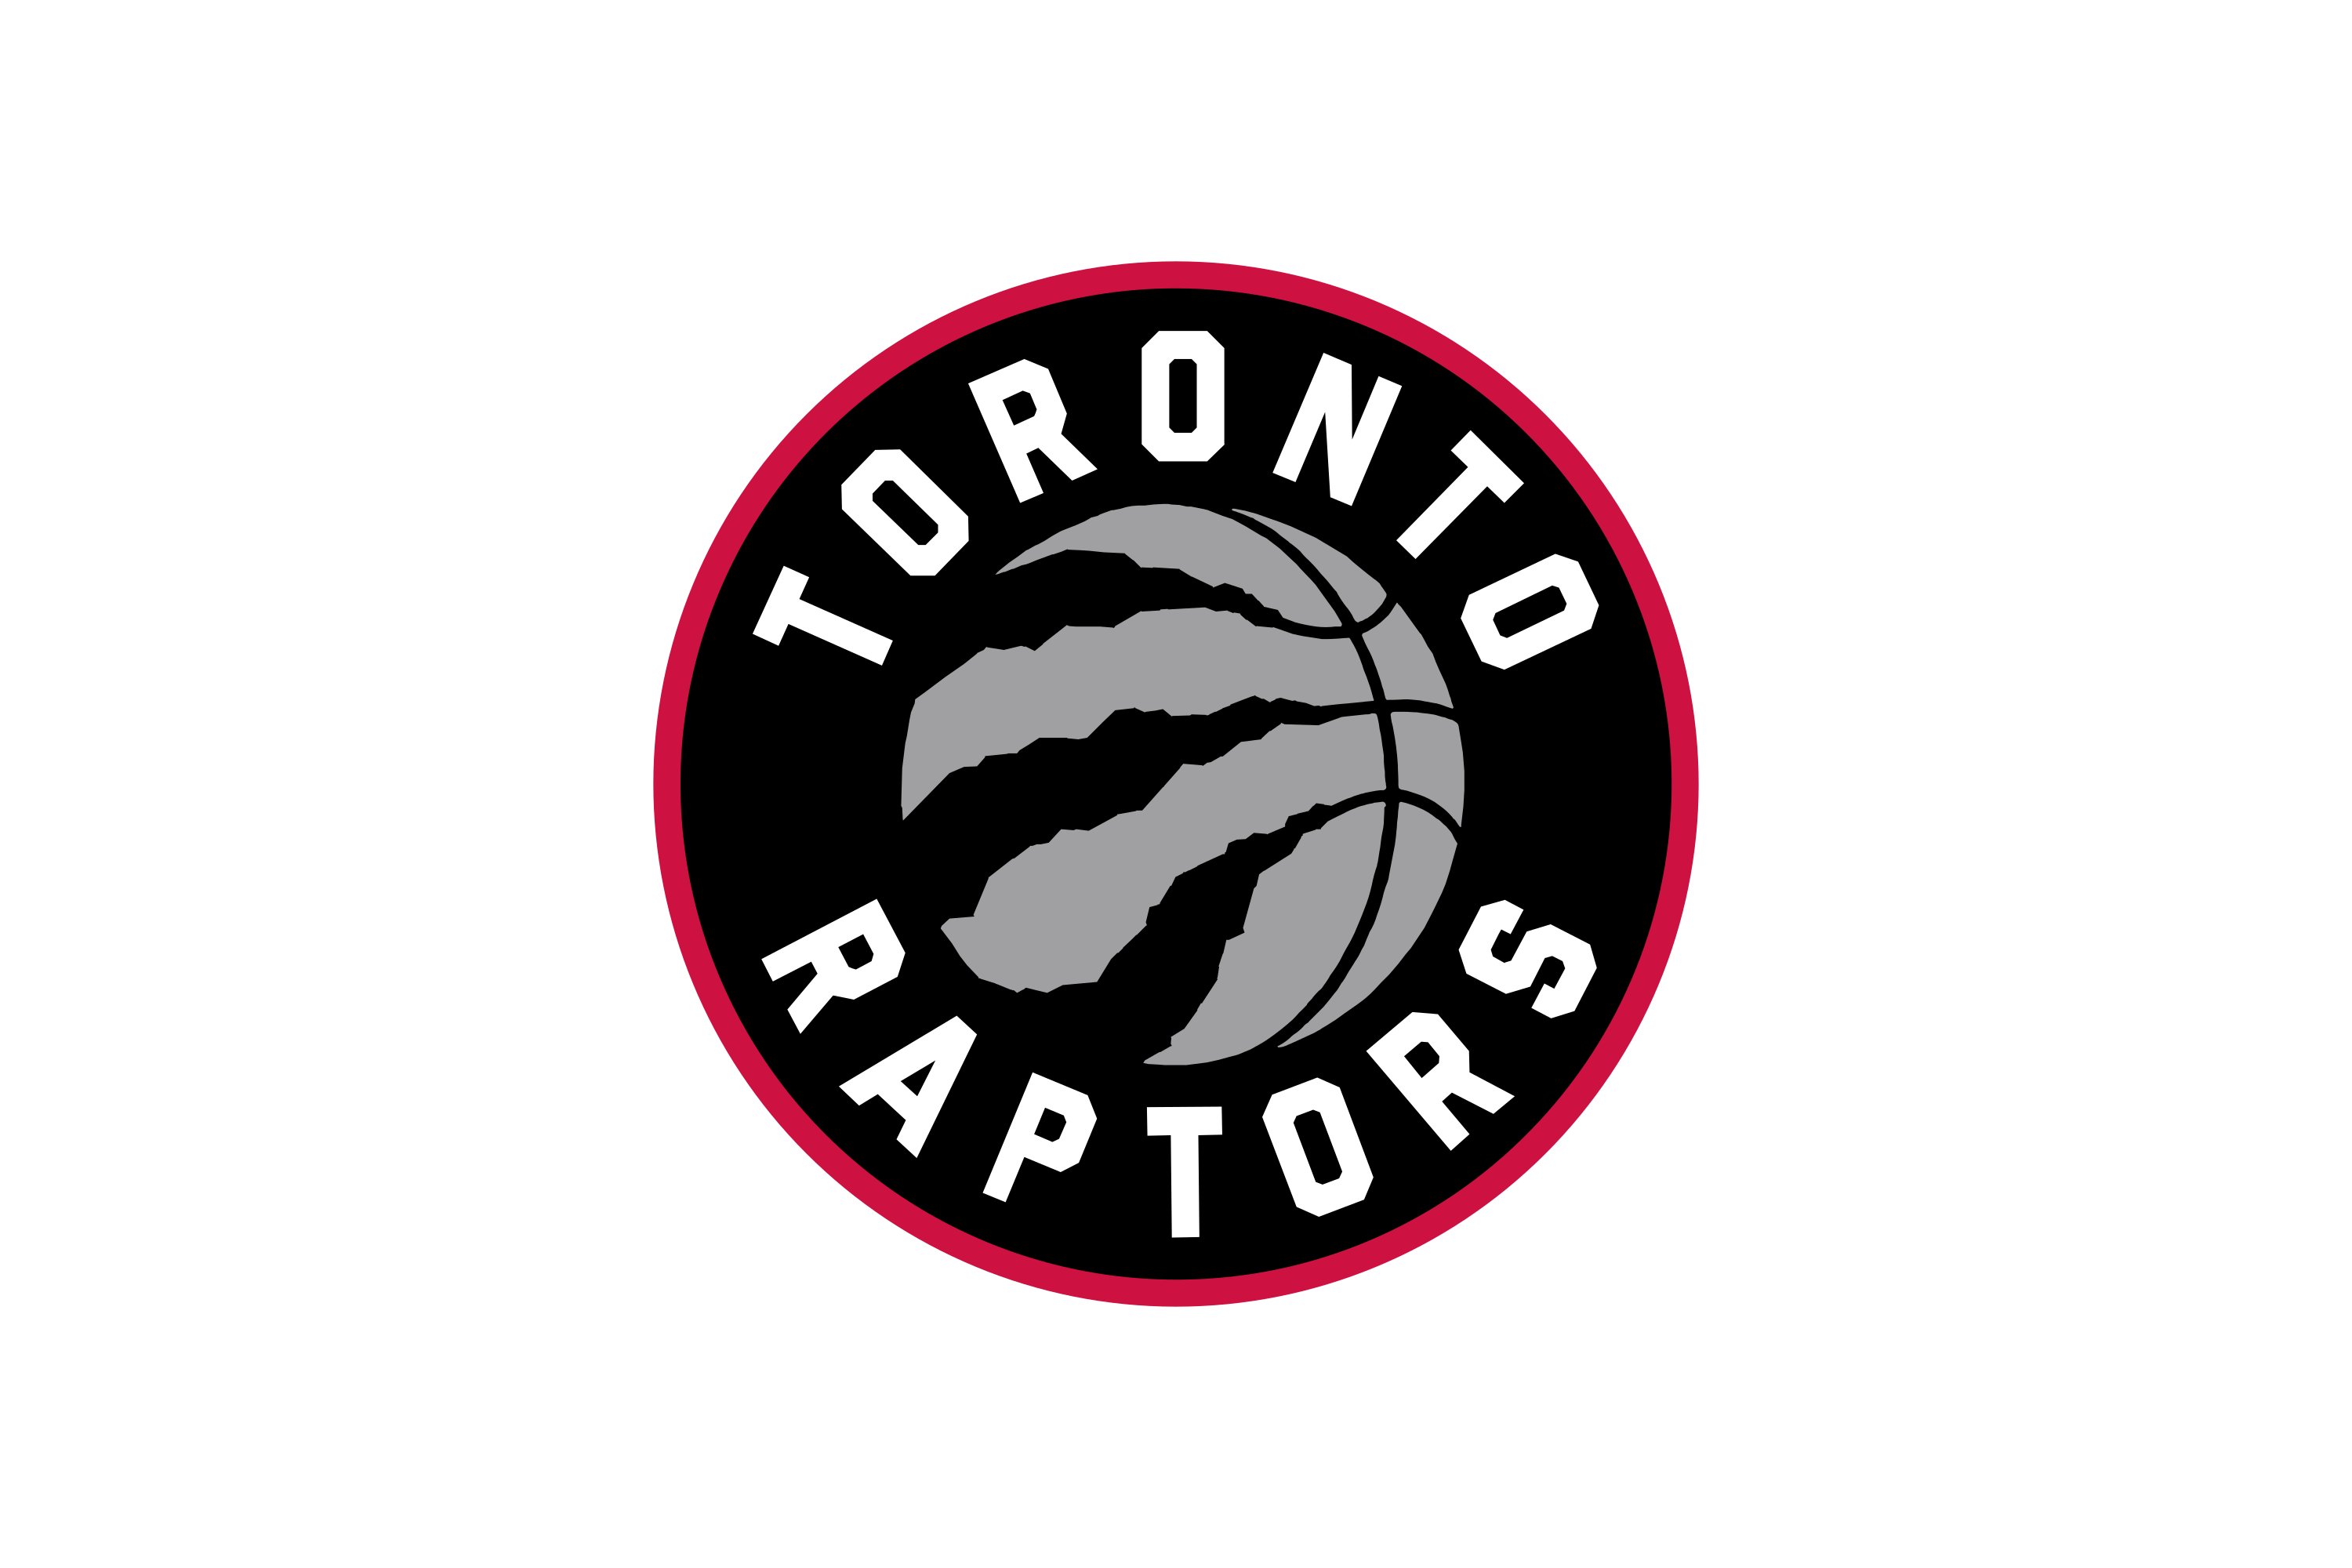 Download Toronto Raptors Logo in SVG Vector or PNG File ...